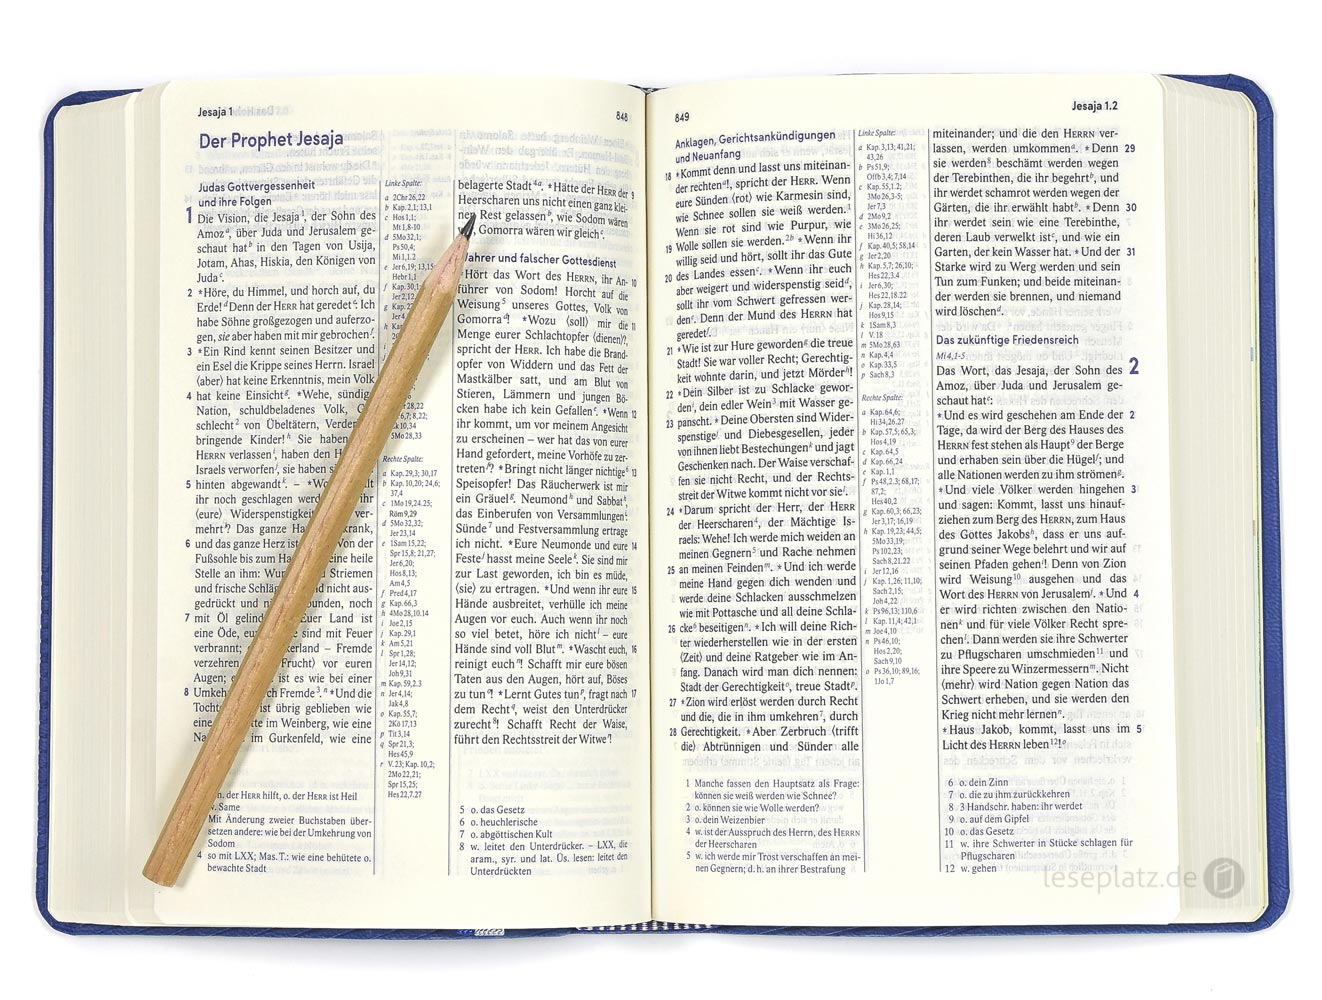 Elberfelder Bibel 2006 Taschenausgabe - Kunstleder blau